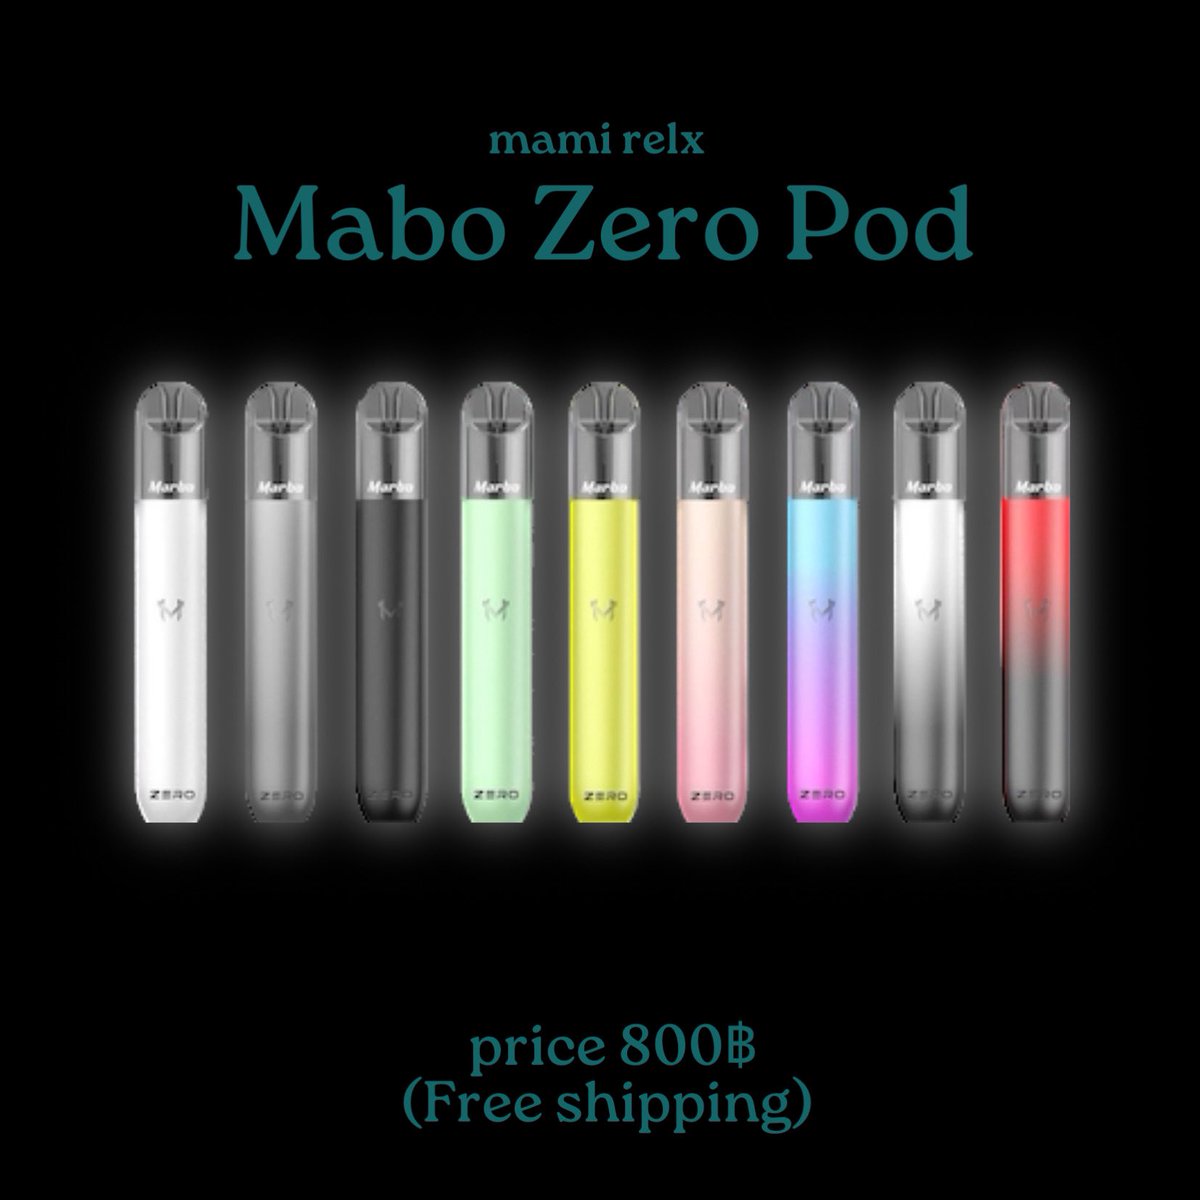 ✿ Marbo Zero ( เครื่องเปล่า )

Price : เครื่องเปล่า 800฿

สนใจสั่งซื้อได้ที่ line : @503naycv 📮  
‼️( ส่งฟรีทุกออเดอร์ )
#พอต #พอตบุหรี่ไฟฟ้า #พอตไฟฟ้า #พอตราคาถูก #พอตพร้อมส่ง #พอตinfy #พอตKS #พอตrelx #หัวrelx #หัวพอตrelx #หัวพอต #หัวพอตราคาถูก